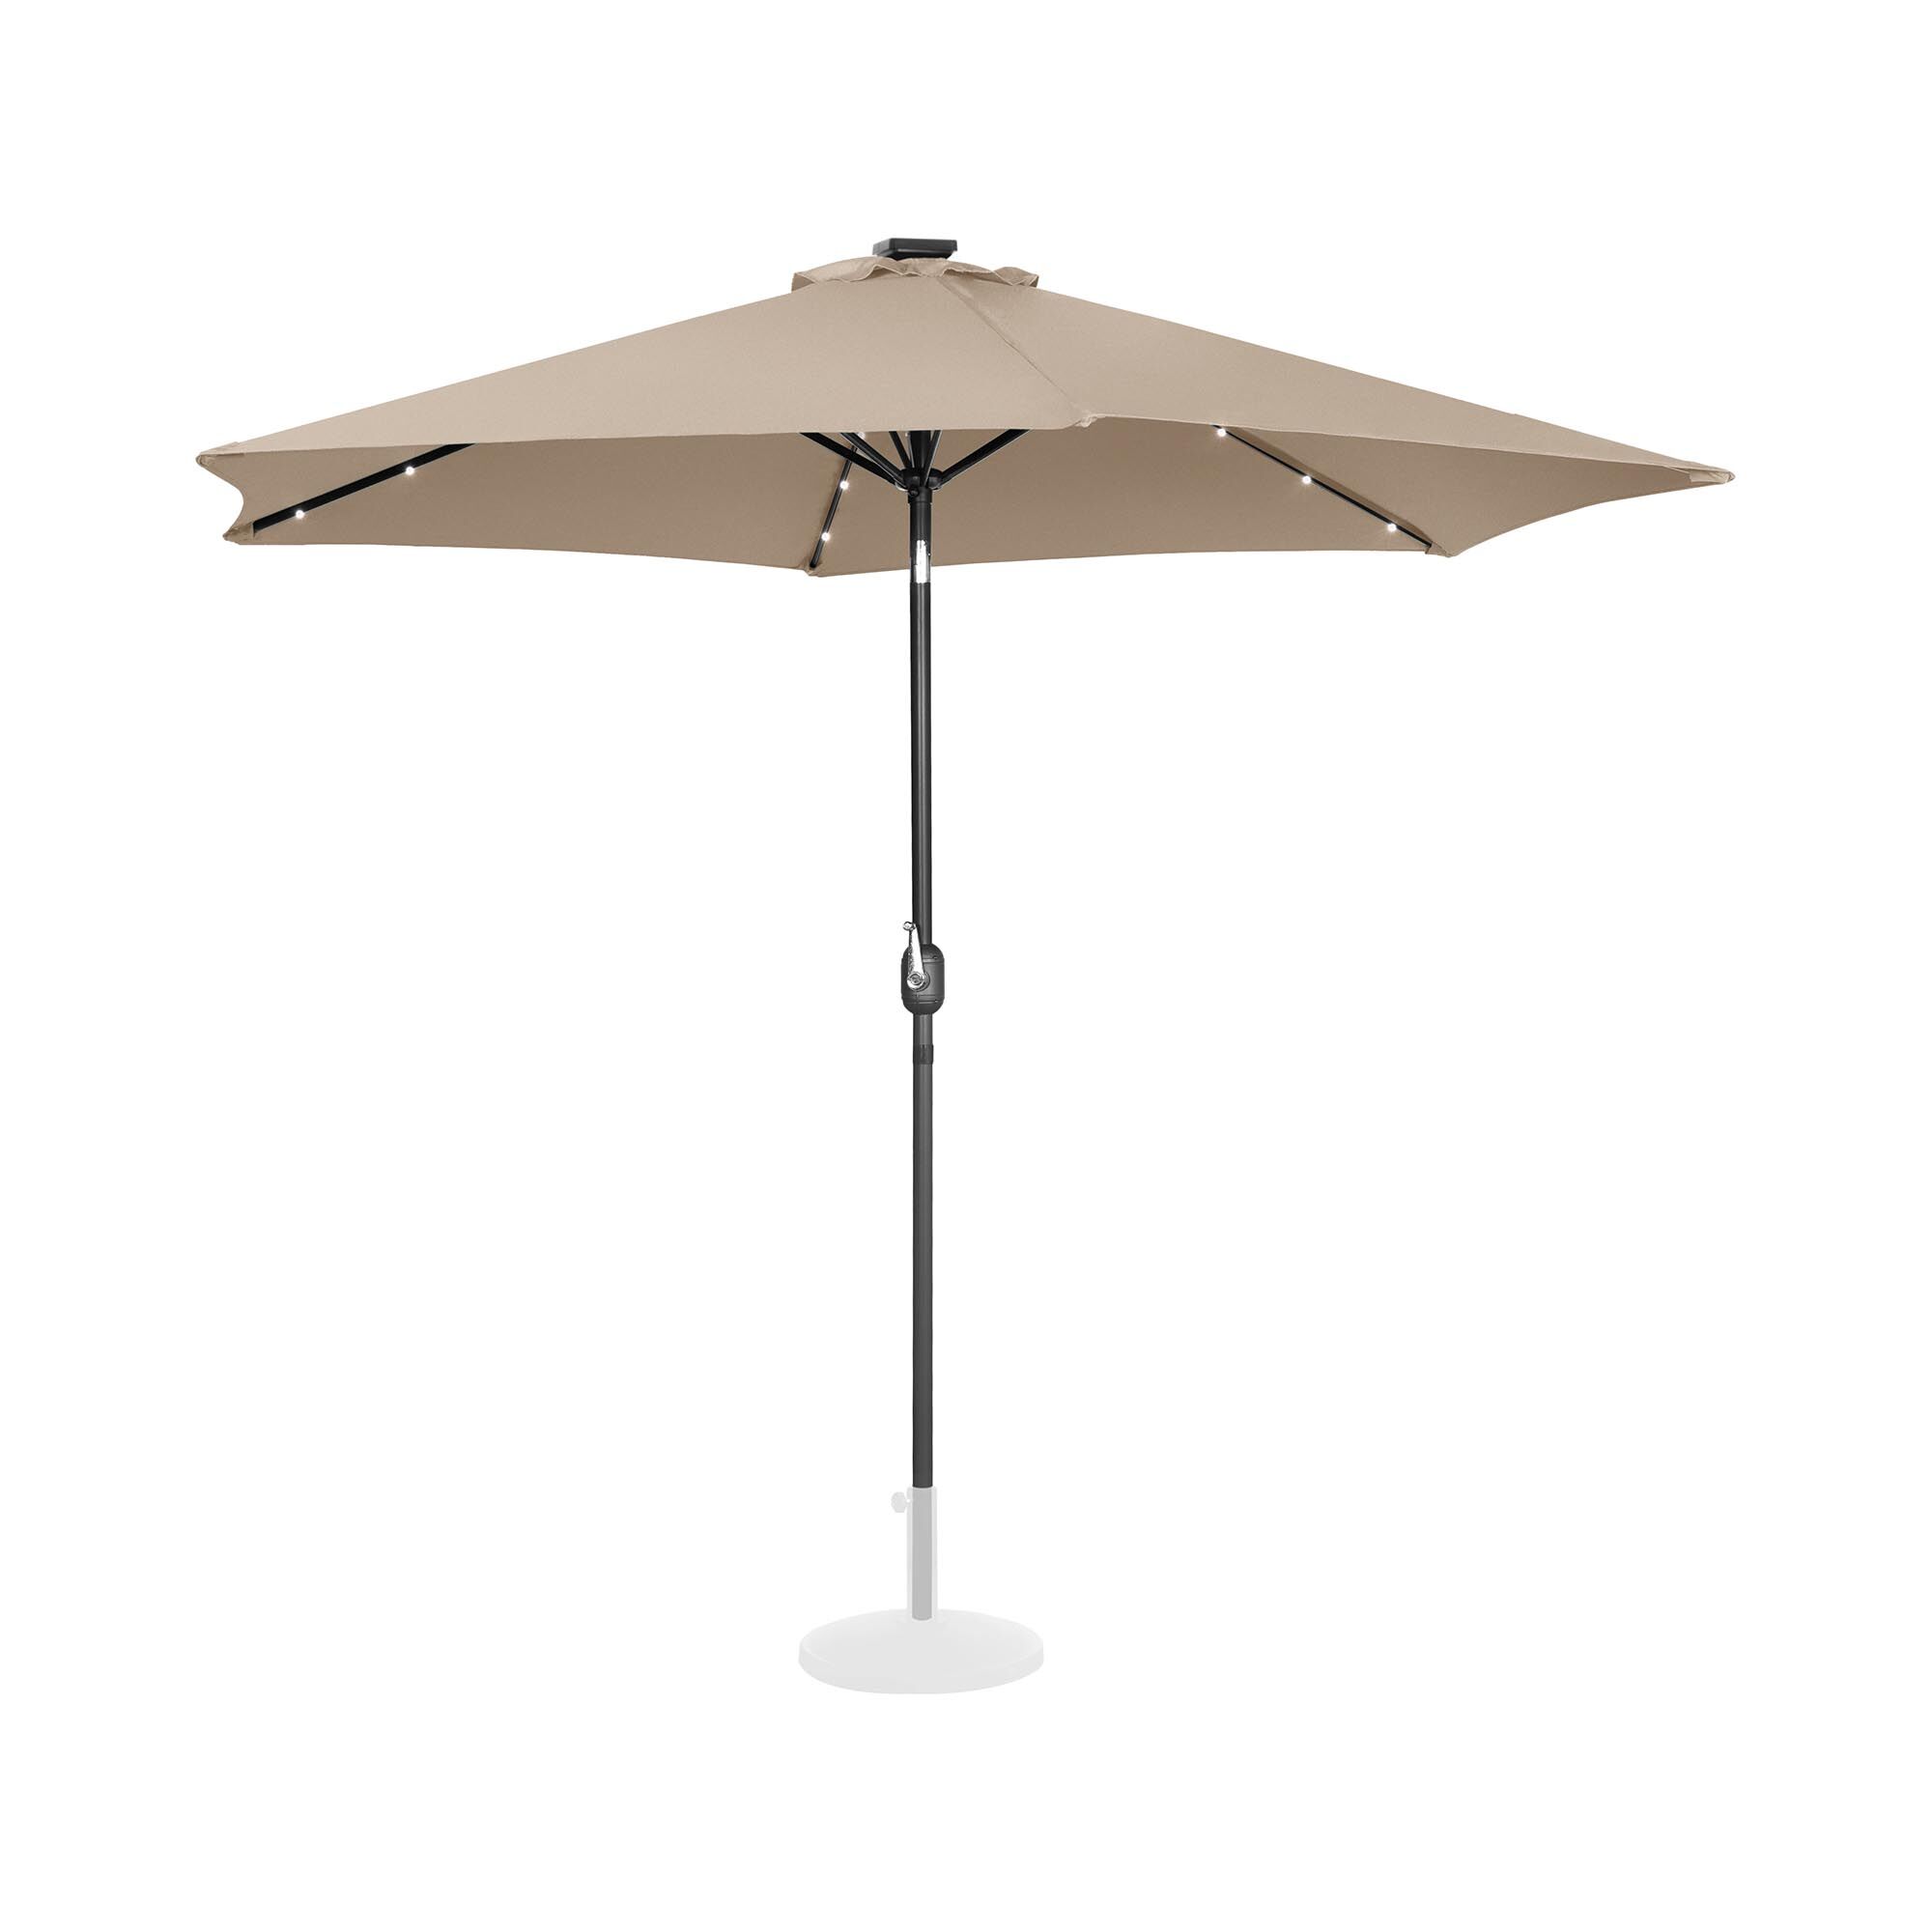 uniprodo ombrellone palo centrale con led - crema - rotondo - Ø 300 cm - inclinabile uni_umbrella_tr300crl